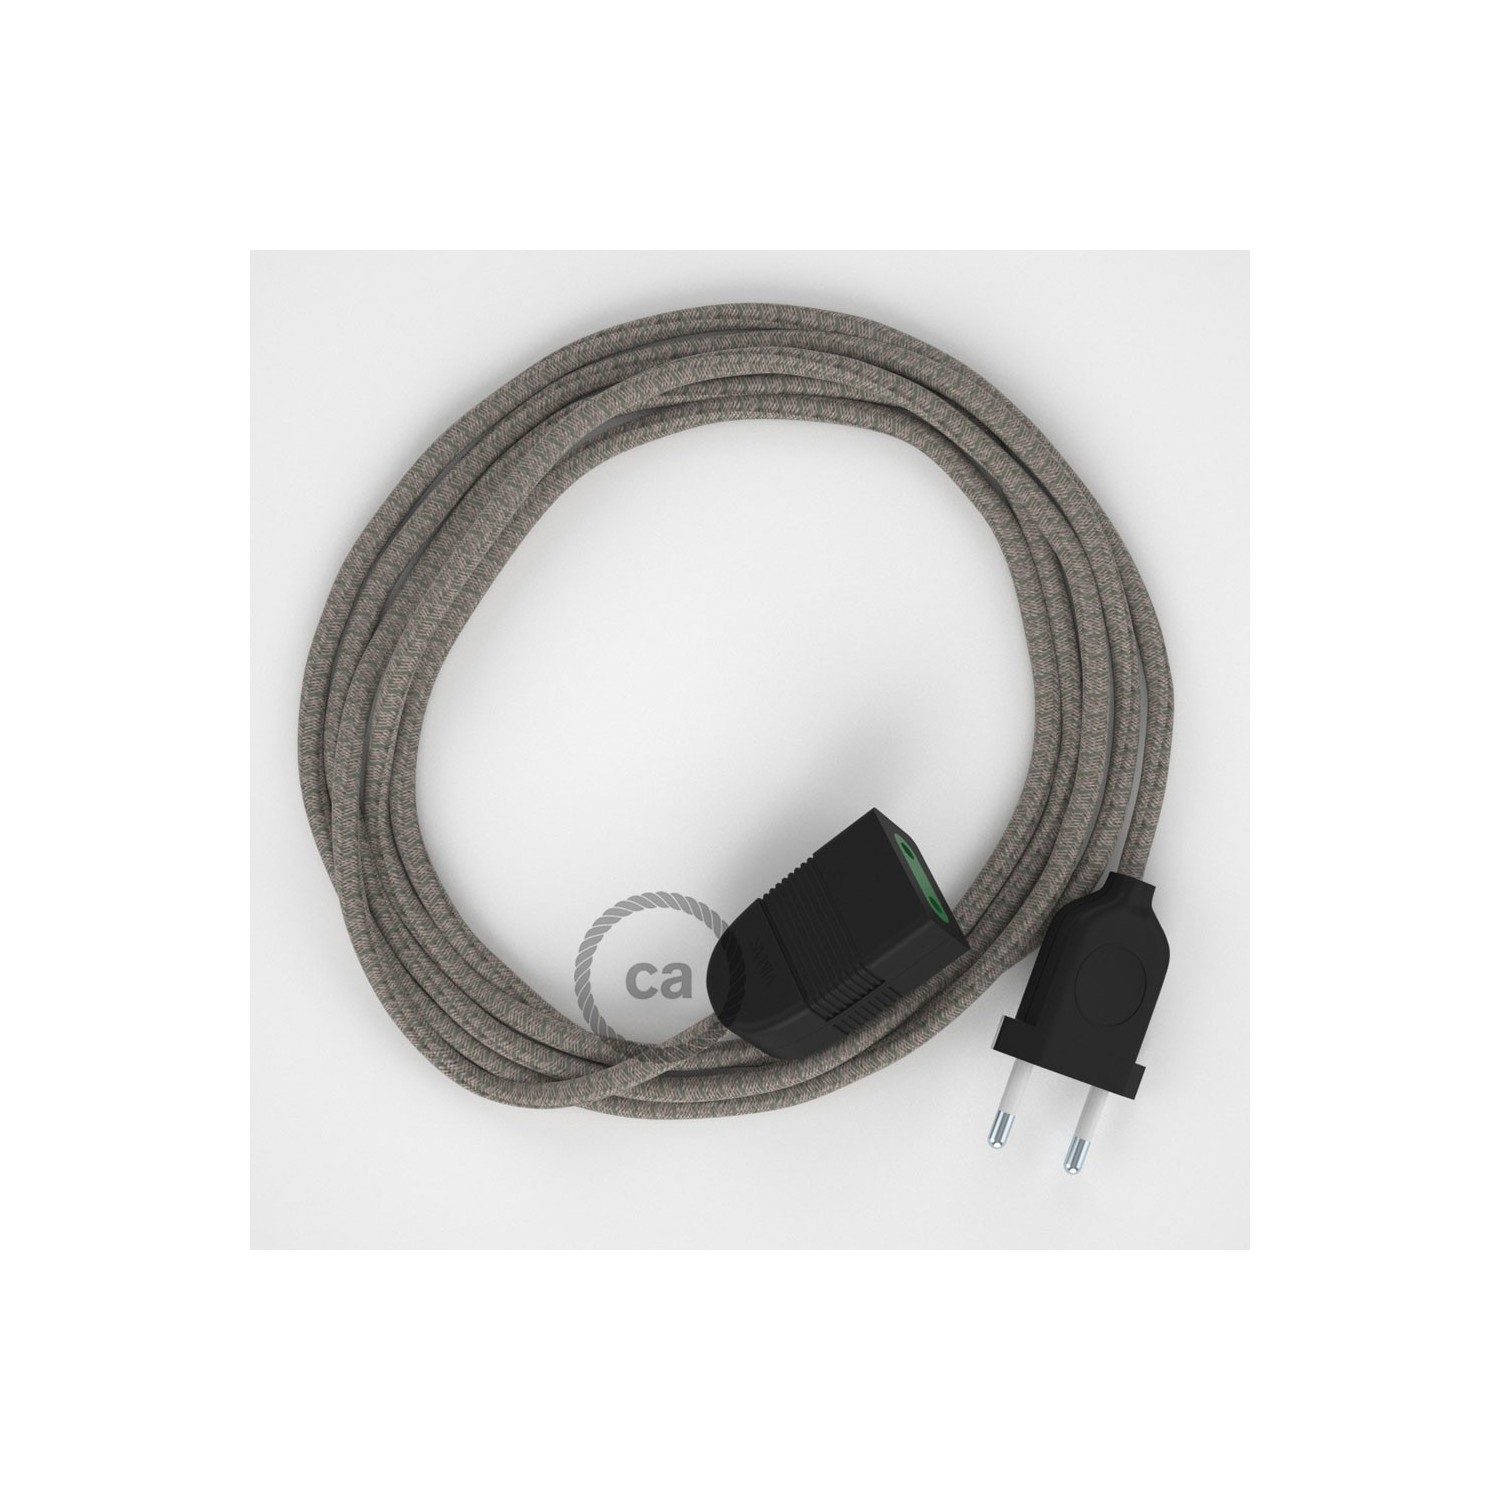 Podaljševalni kabel za napajanje (2P 10A) romb, timijan zeleni naravni lan in bombaž RD62 - Made in Italy